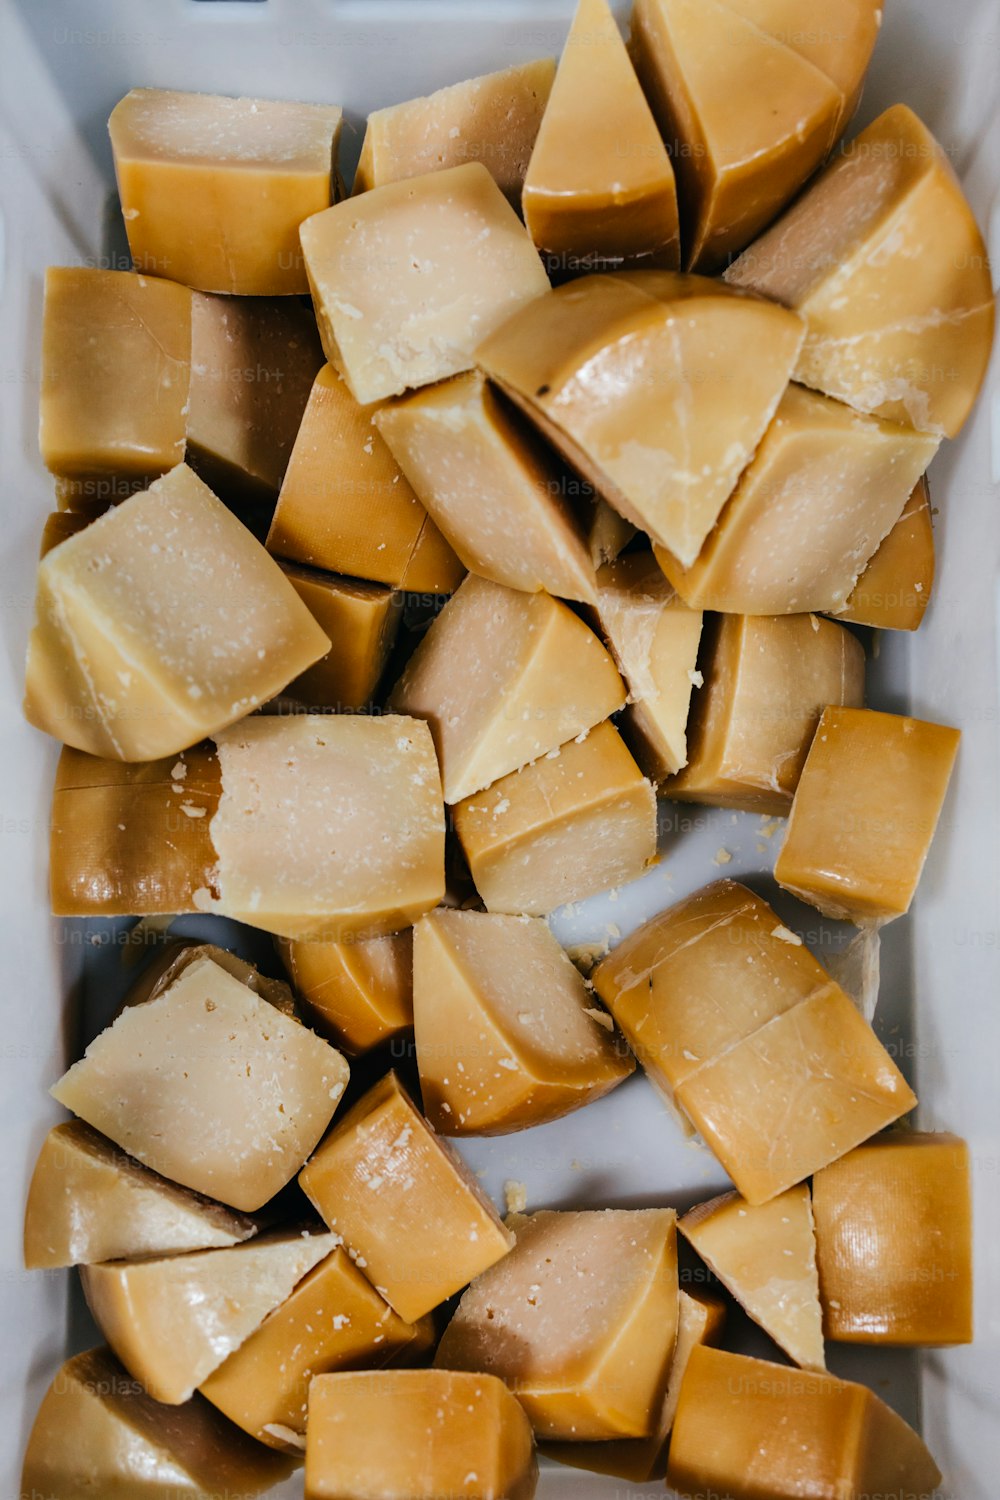 Détails de l’usine traditionnelle de production de fromage et de produits laitiers. Des morceaux de délicieux fromage tranchés prêts à être emballés.